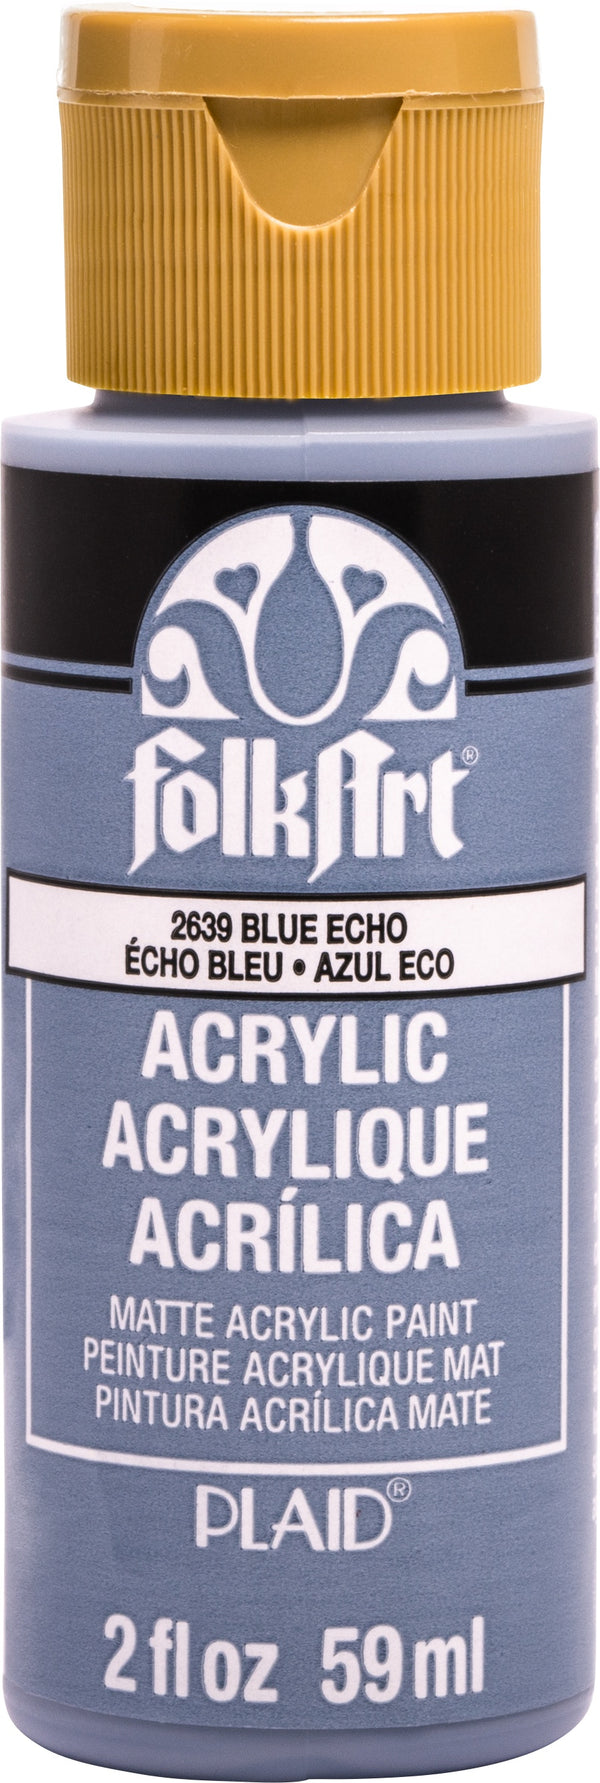 FolkArt Acrylic Paint 2oz - Blue Echo*